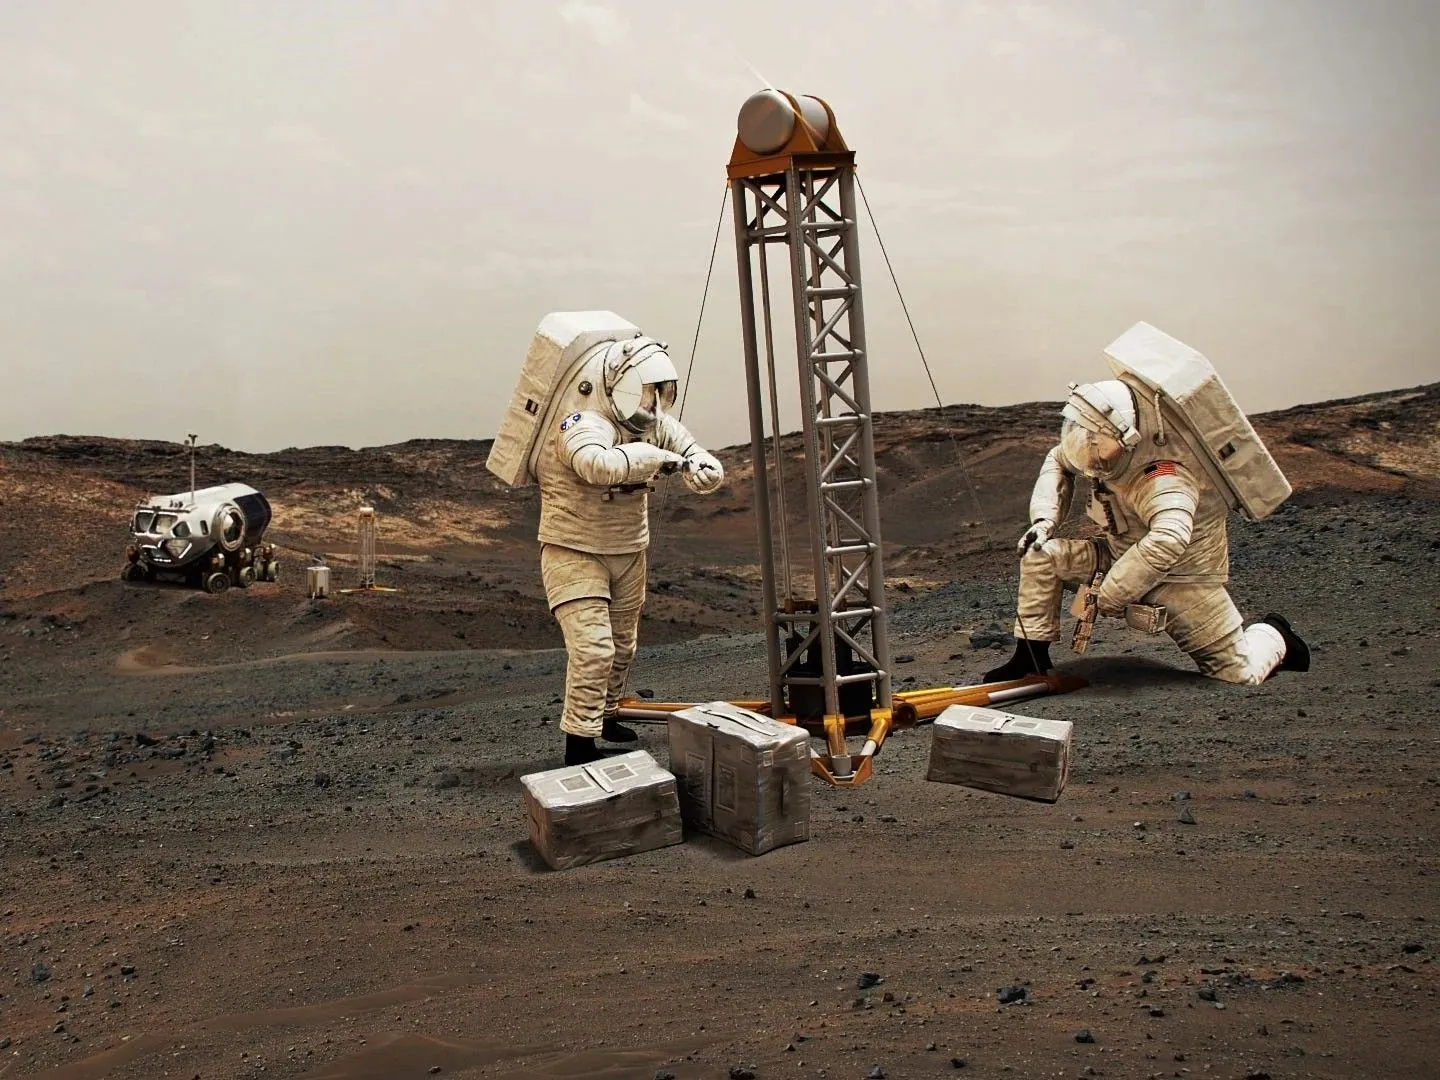 zwei Astronauten in klobigen Raumanzügen bedienen einen Bohrer auf dem Mars